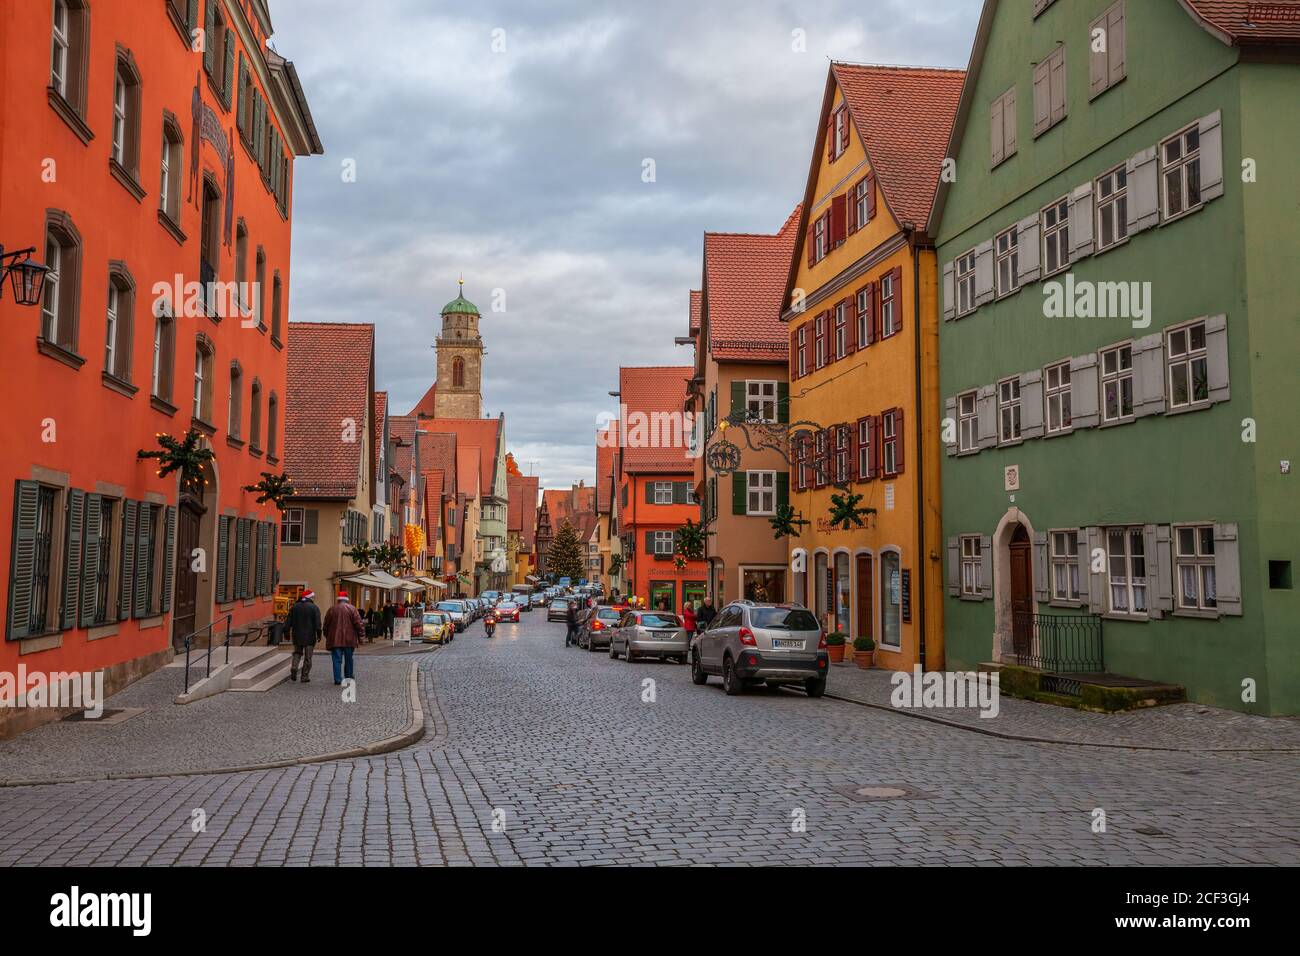 Des bâtiments colorés bordent cette route en pierre à galets, Dinkelsbuhl, Allemagne Banque D'Images